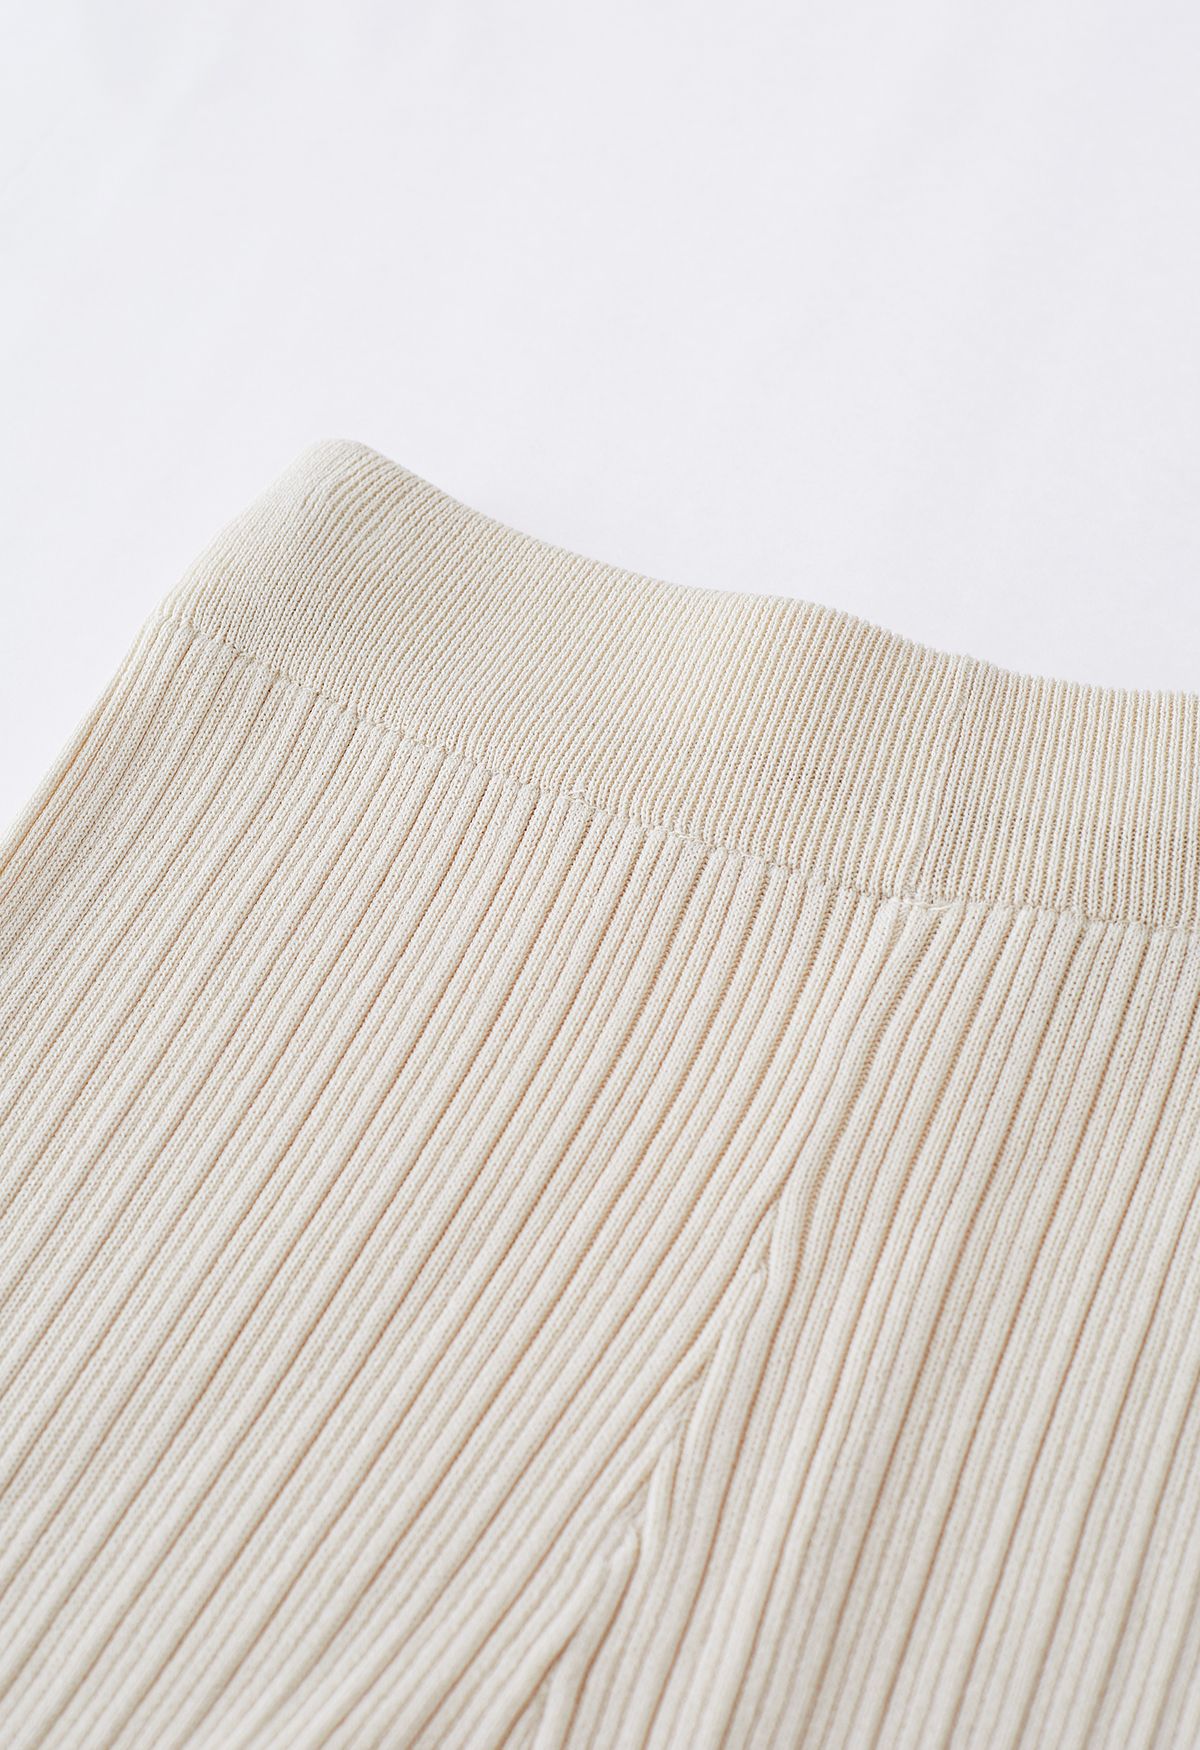 Conjunto de pantalón y top de punto con cordón en la manga en color crema